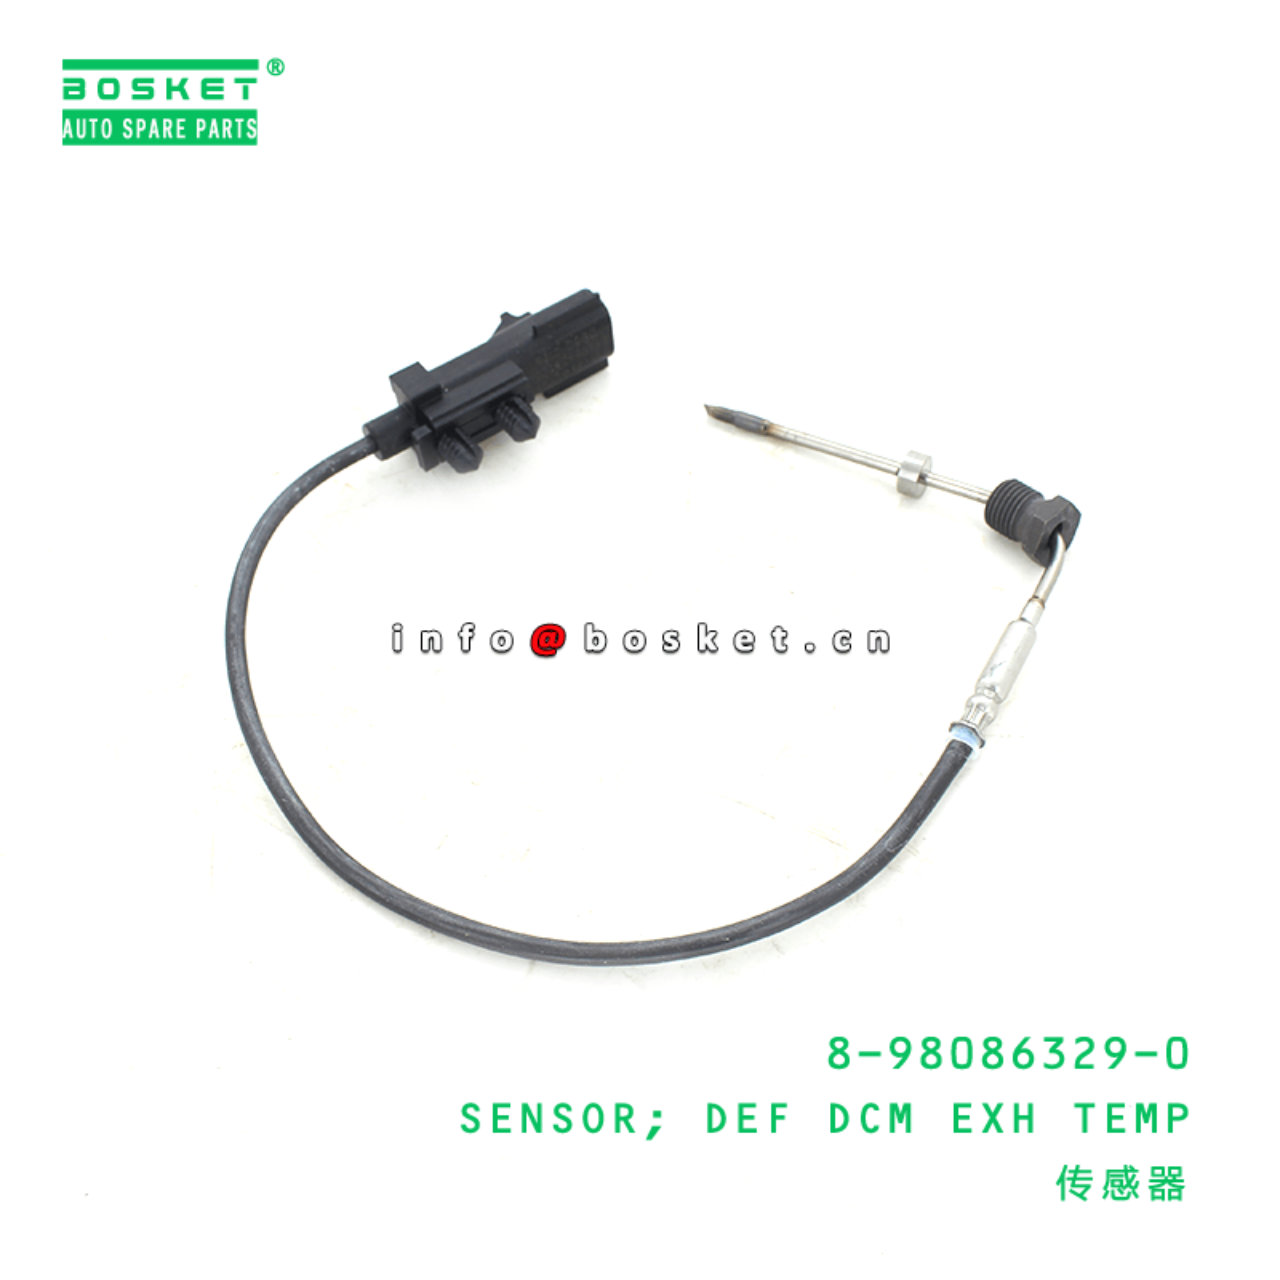 8-98086329-0 Def Dcm Exhaust Temp Sensor 8980863290 Suitable for 